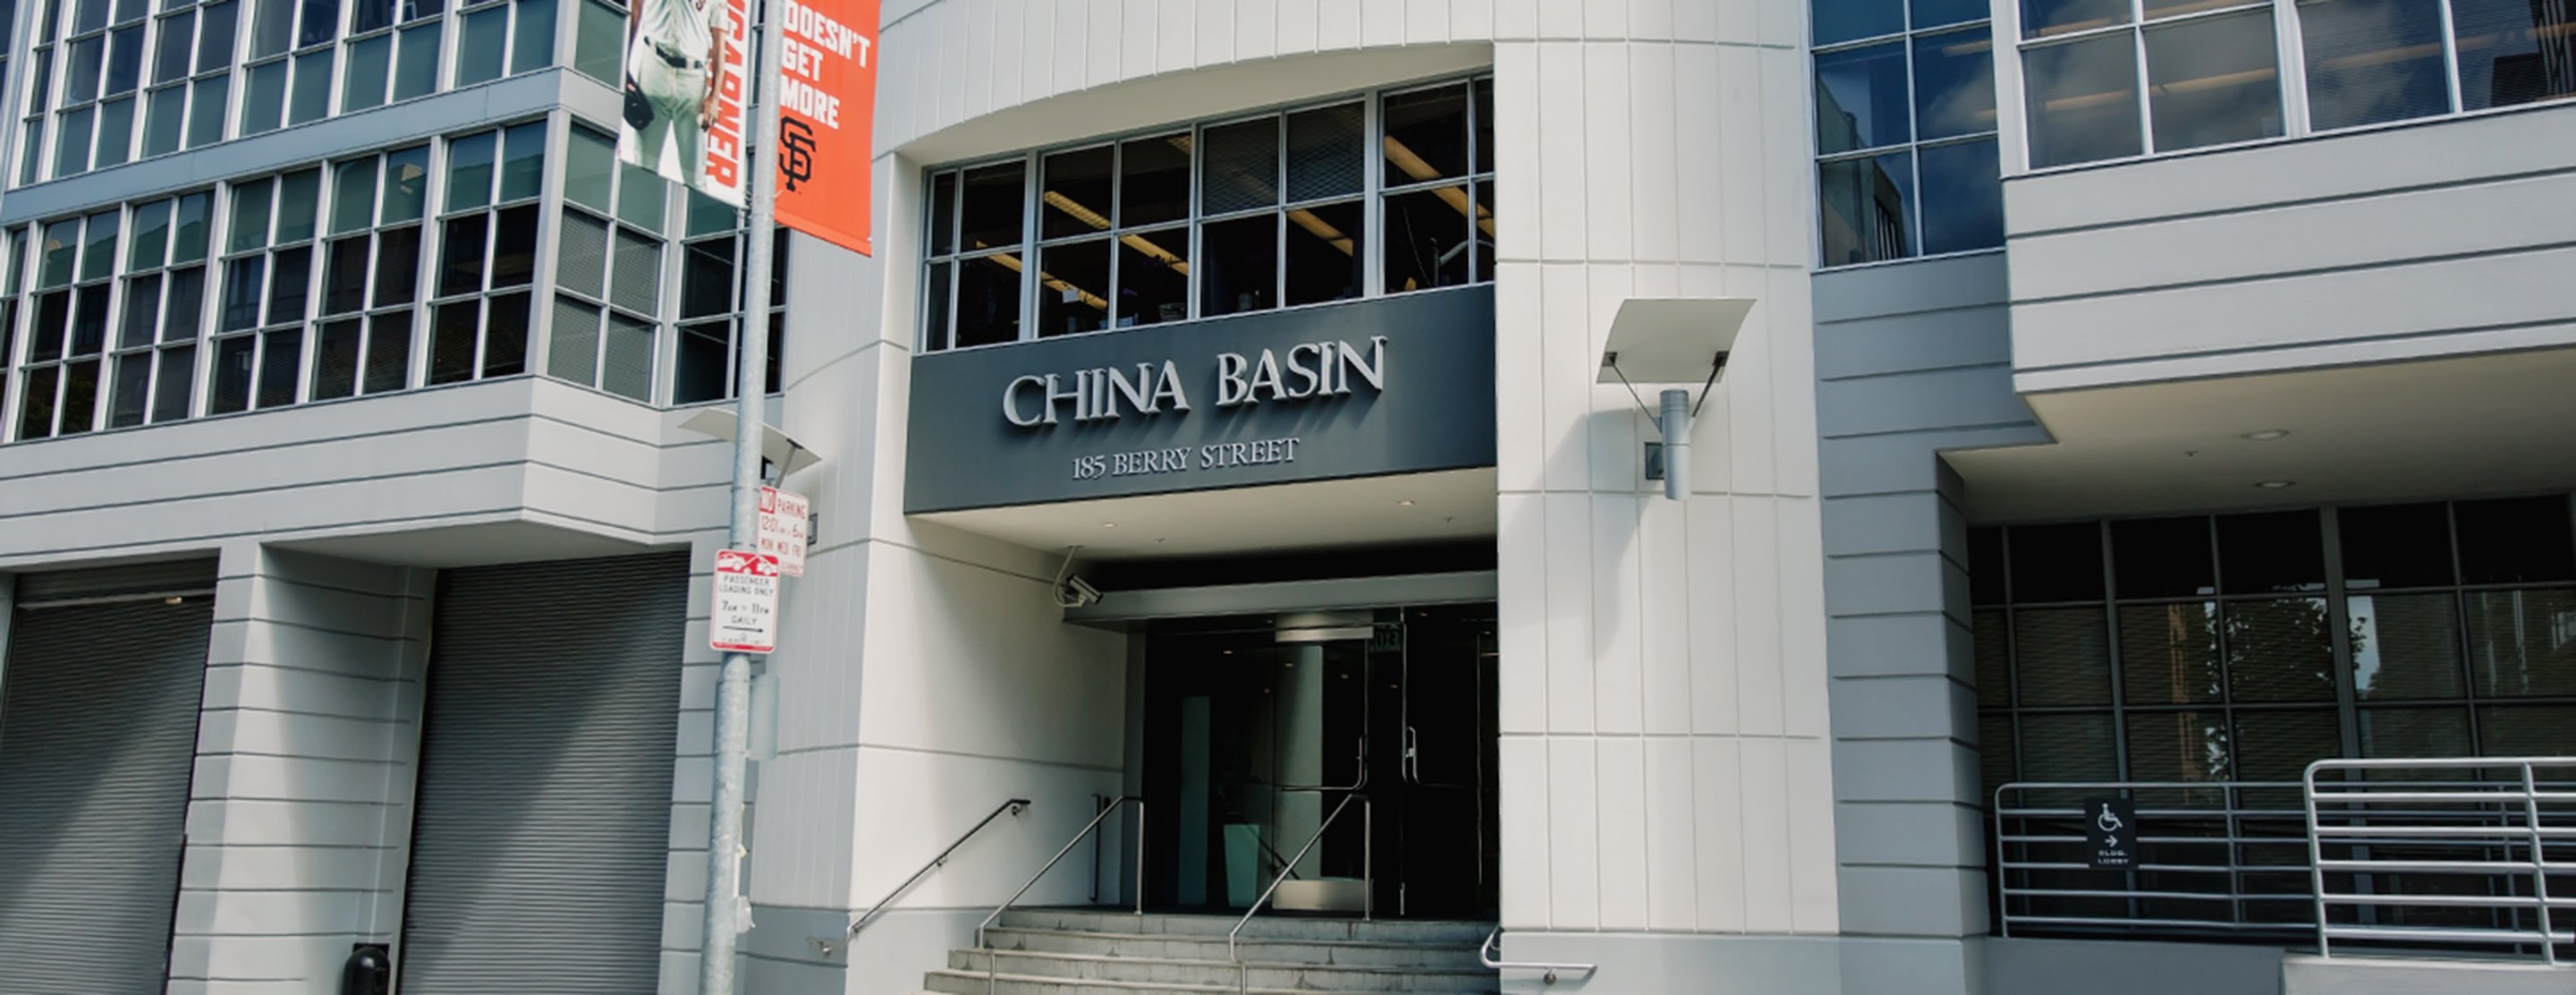 China Basin building entrance